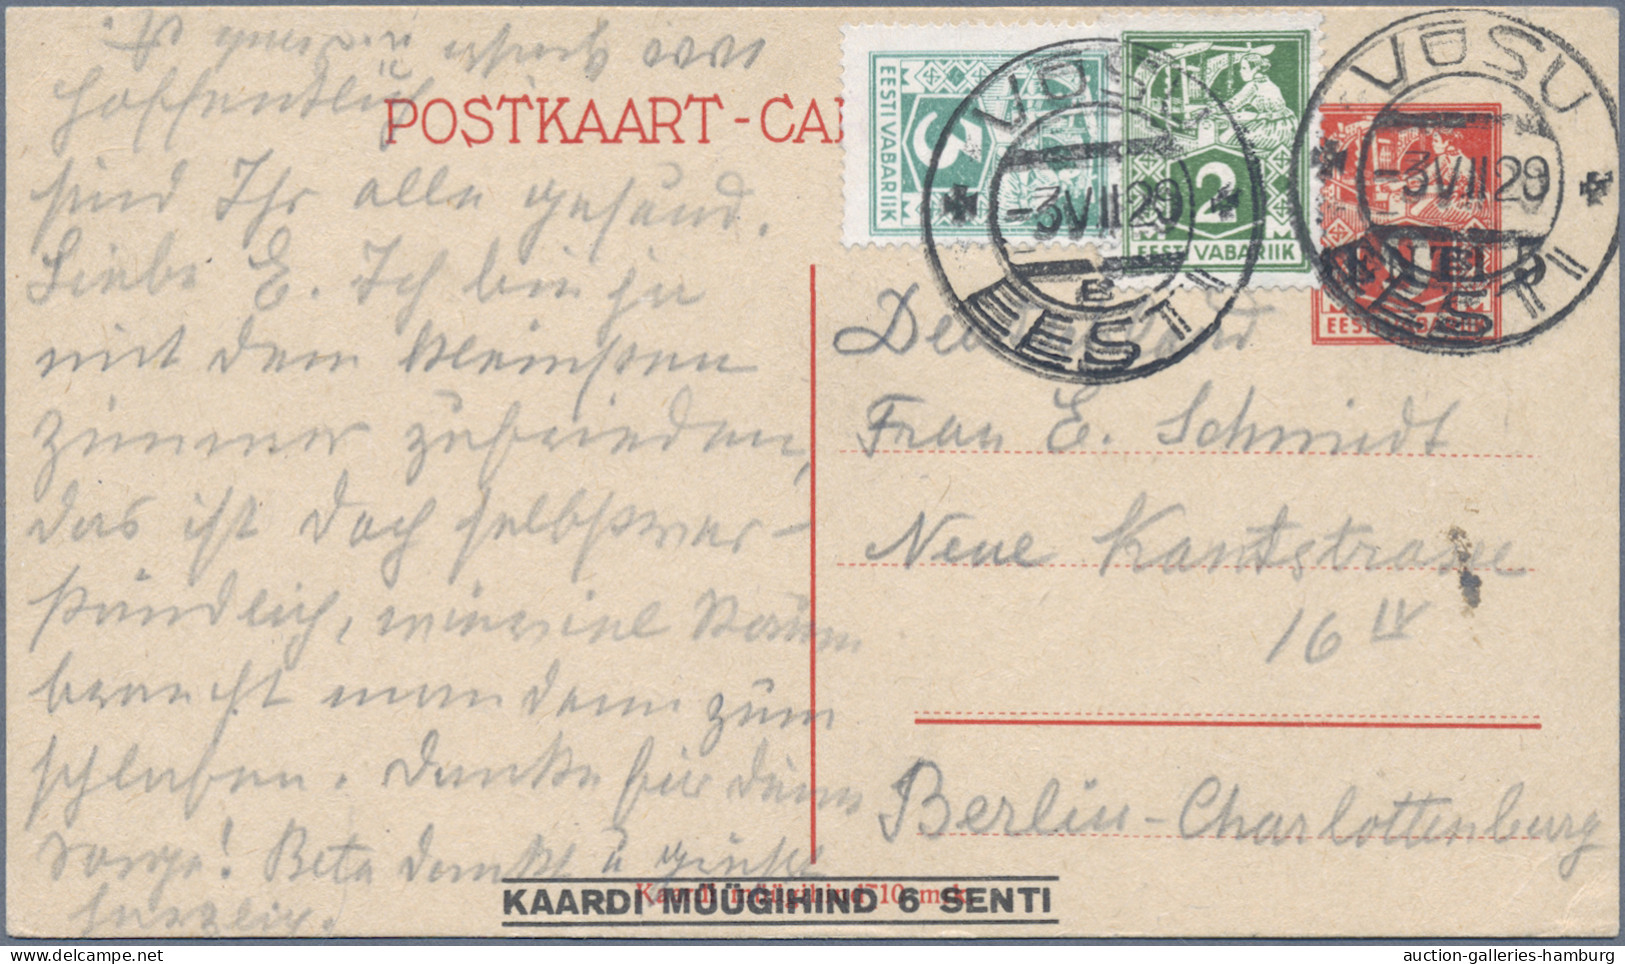 Estonia - postal stationery: 1923-1938, Partie von 13 Ganzsachenkarten inkl. Fra